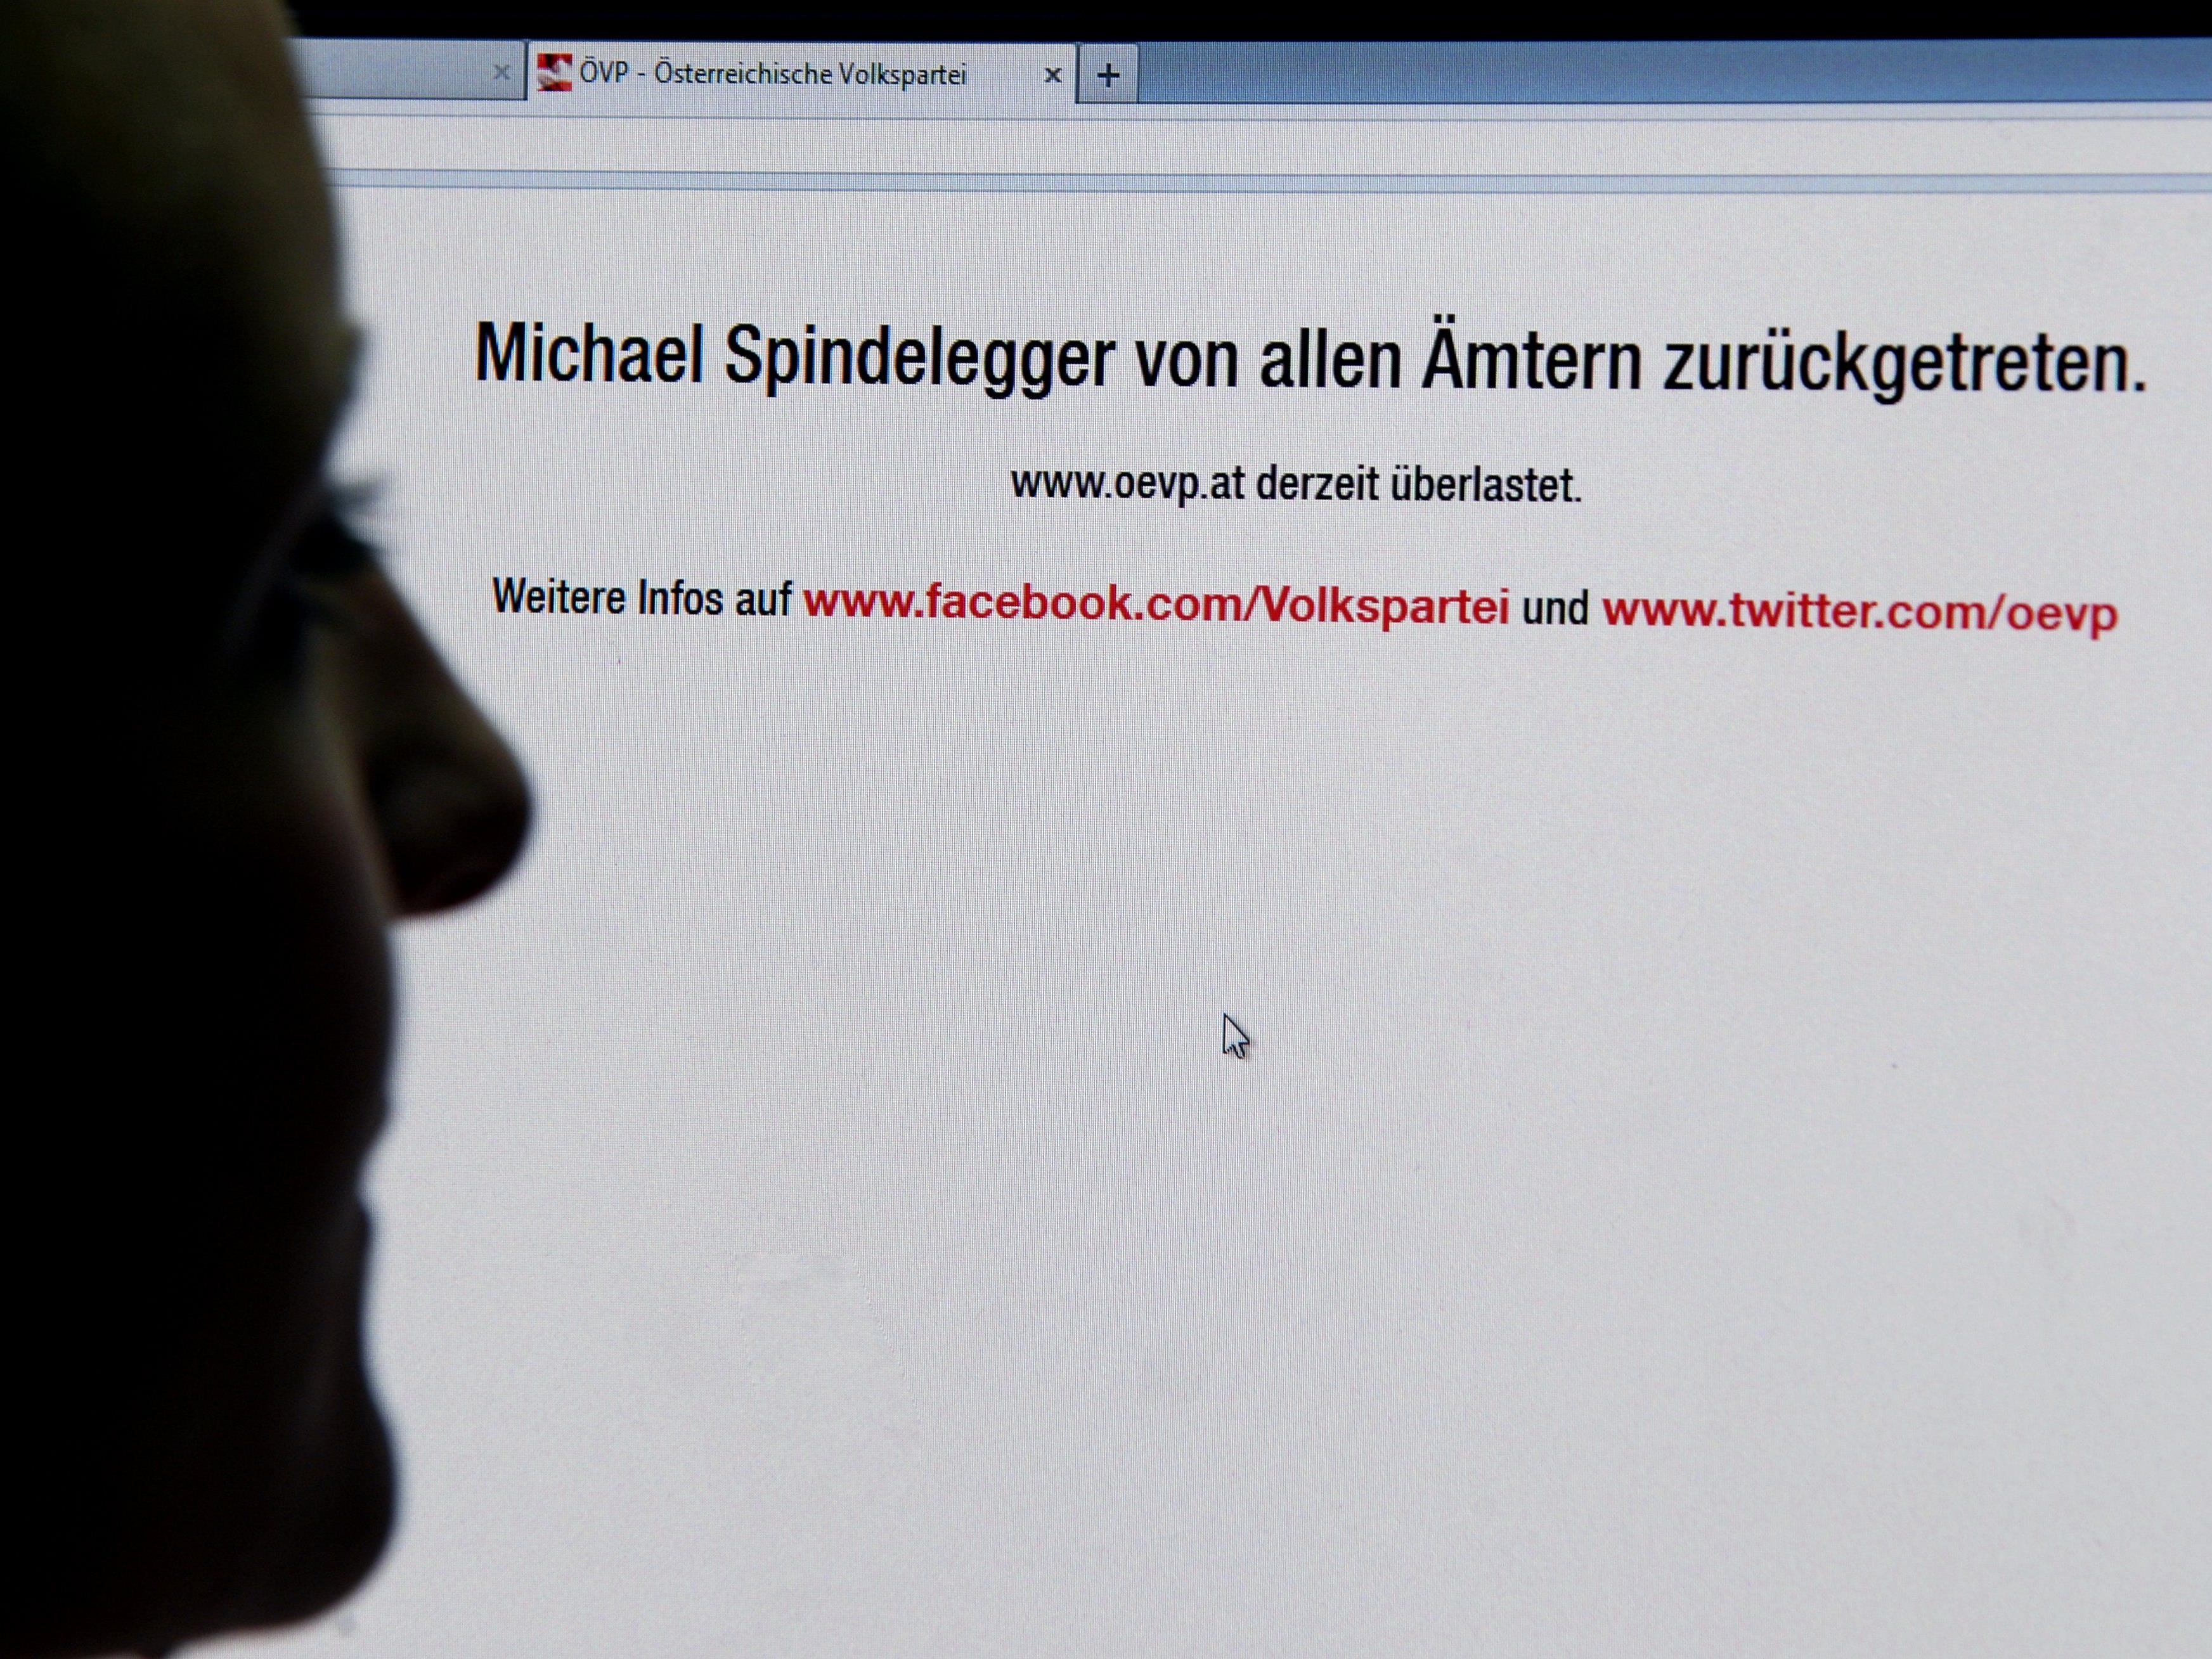 Das Netz überschlug sich: Die Homepage der ÖVP war überlastet, die beliebteste Hashtag auf Twitter war #Spindelegger.